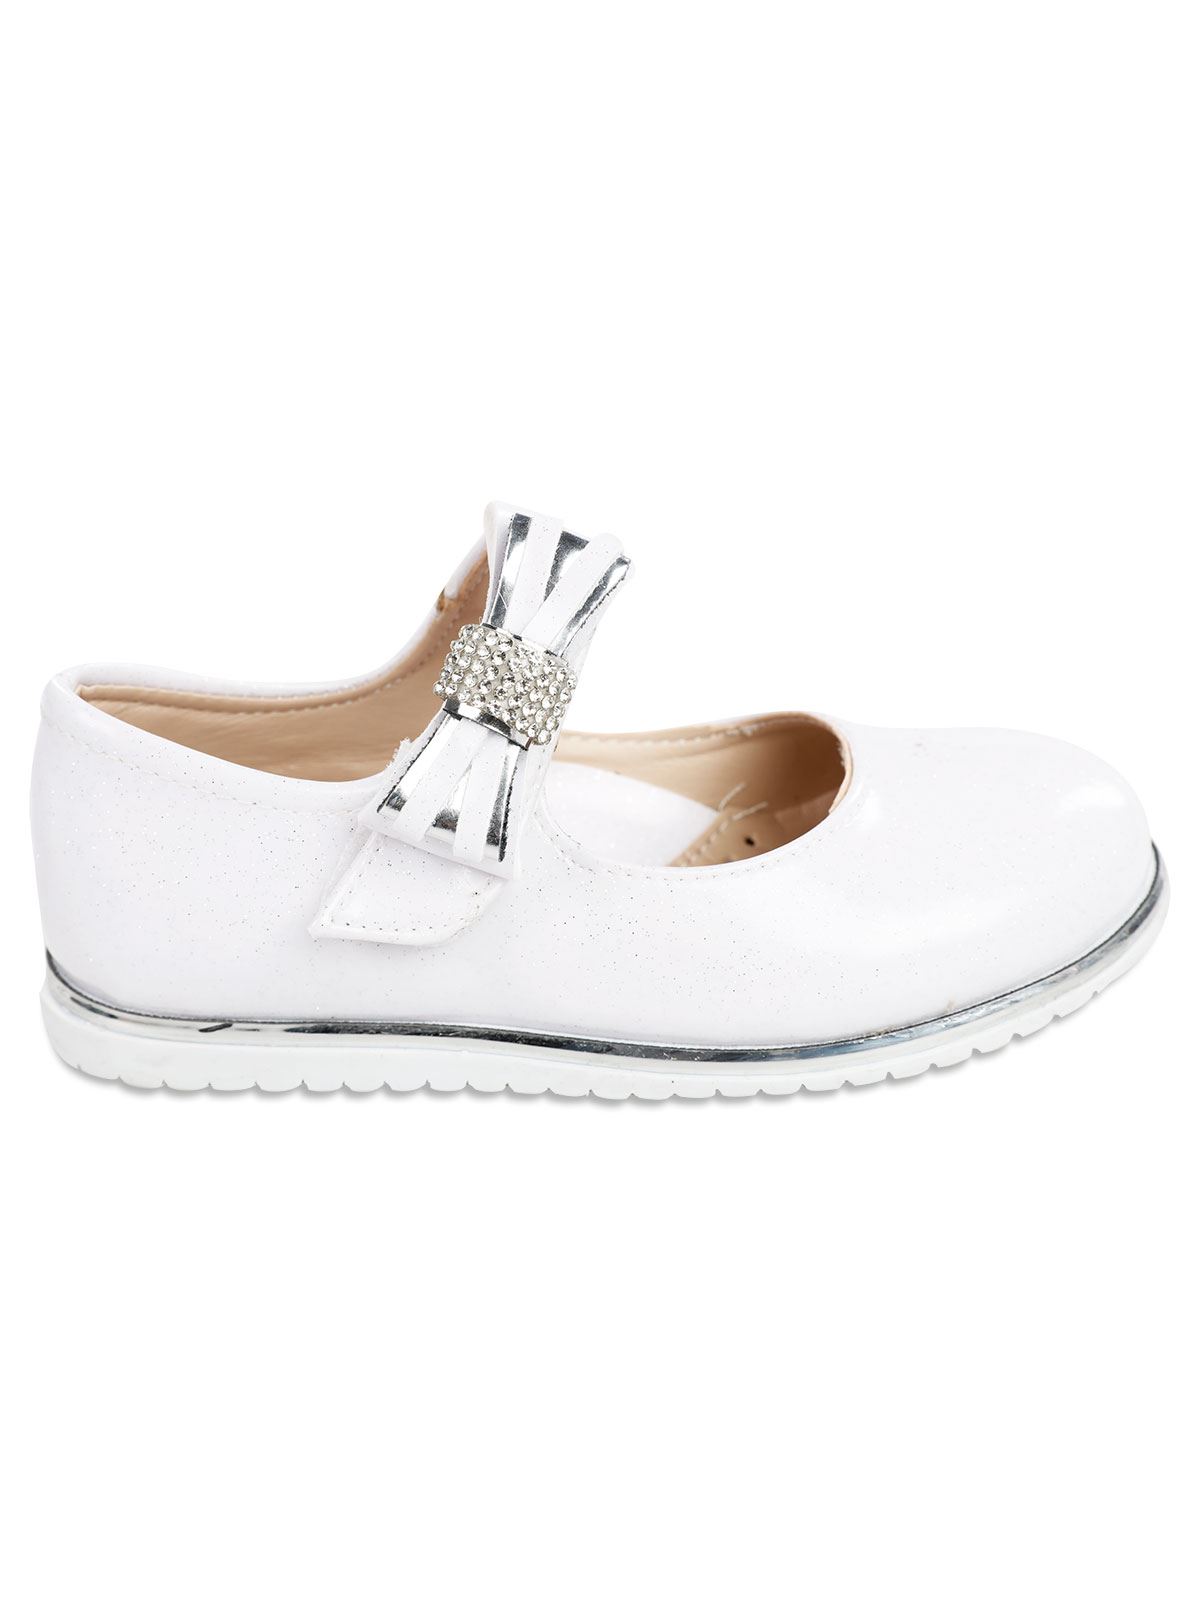 Civil Girls Kız Çocuk Babet Ayakkabı 31-36 Numara Beyaz